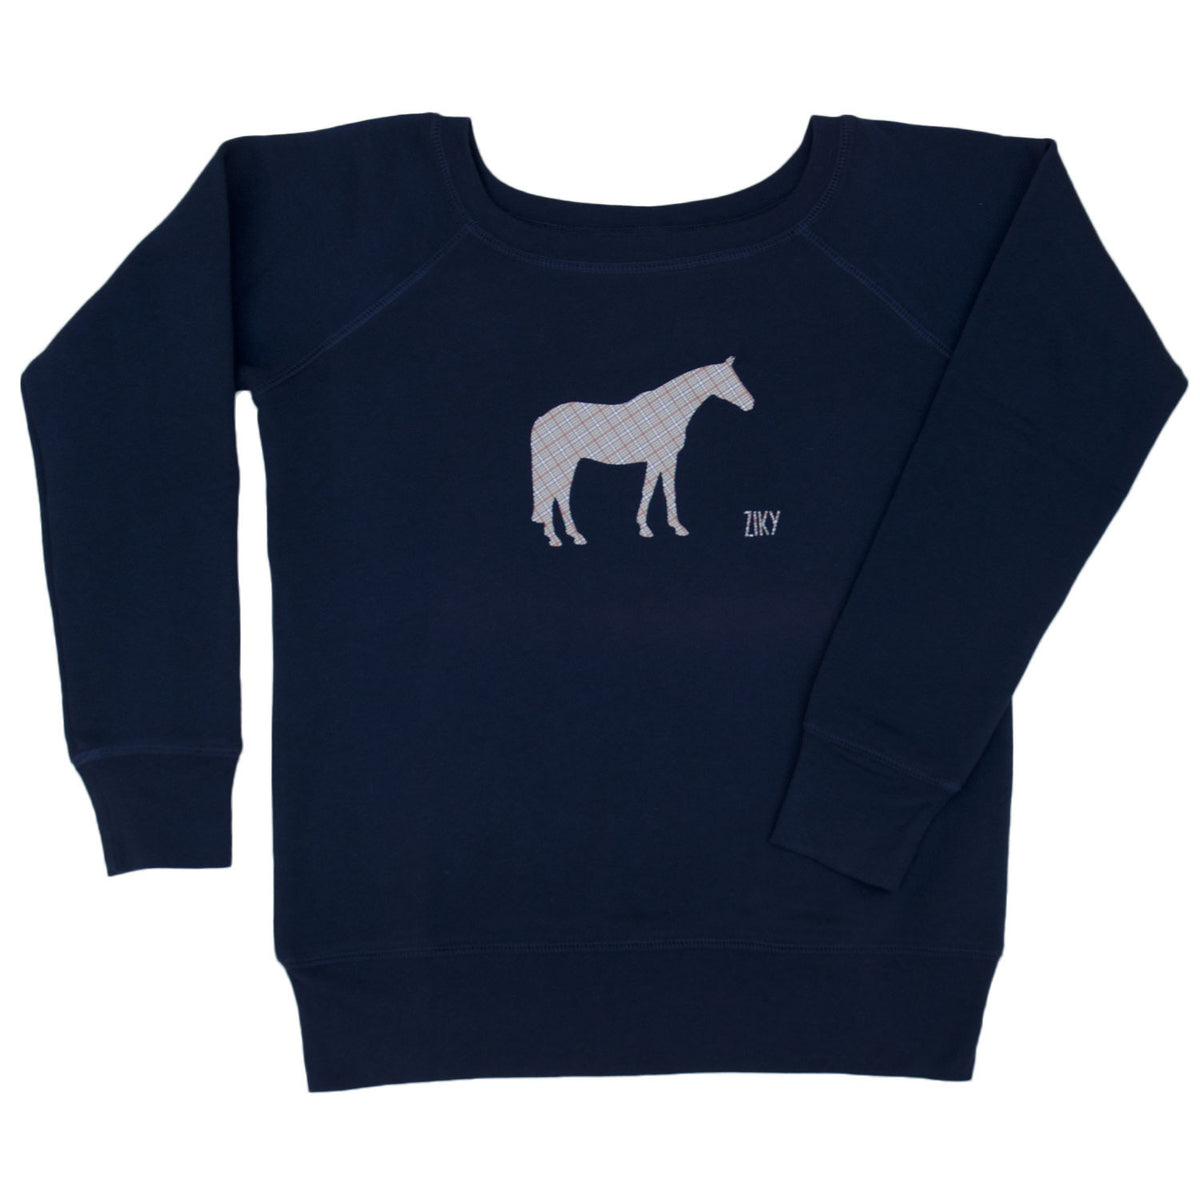 Plaid horse scoop neck sweater